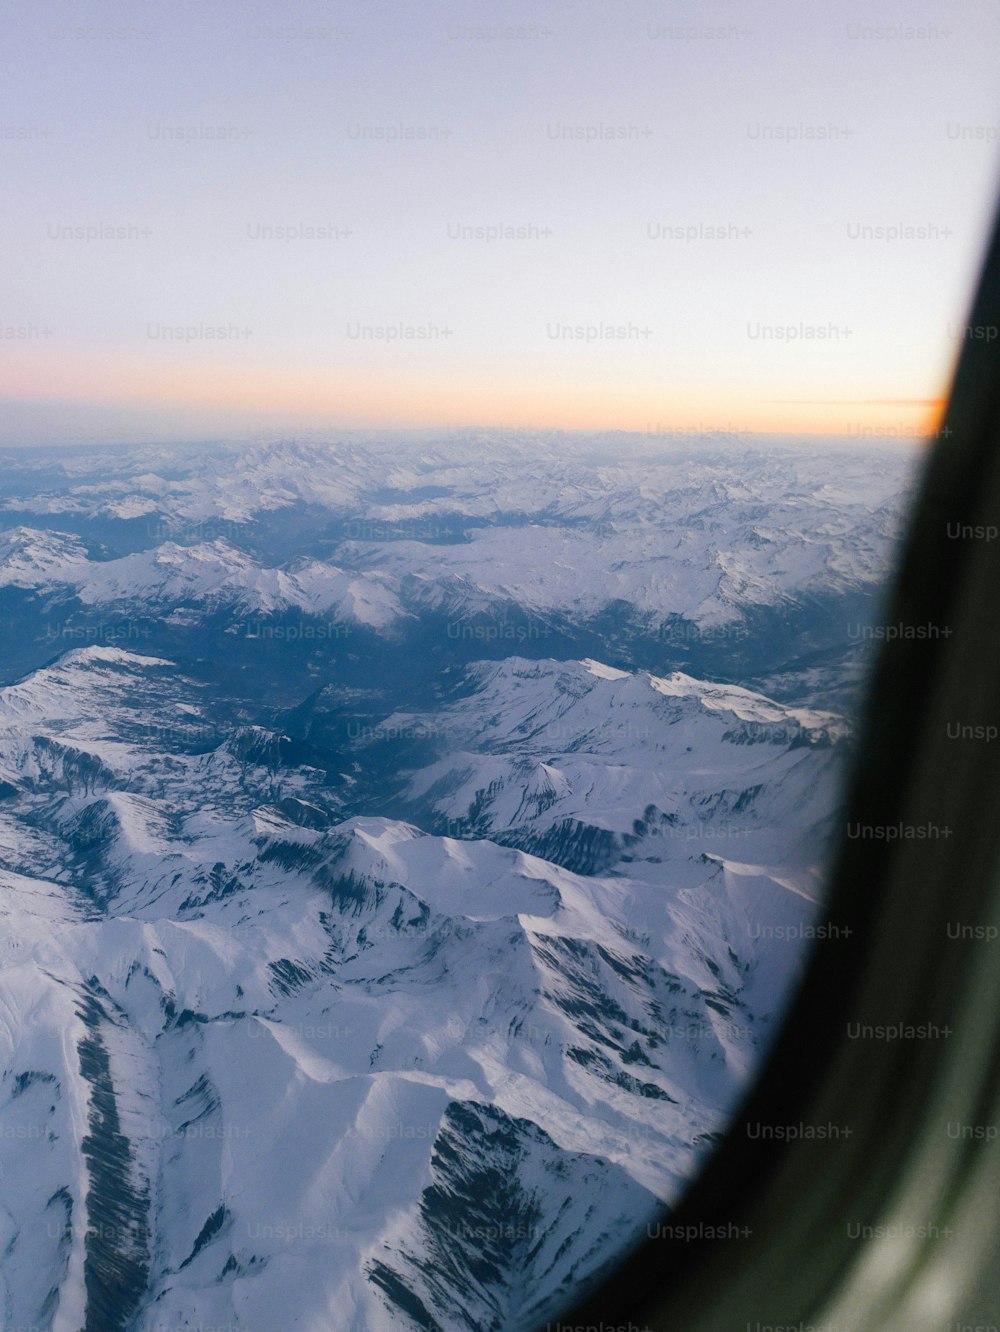 une vue d’une chaîne de montagnes depuis une fenêtre d’avion